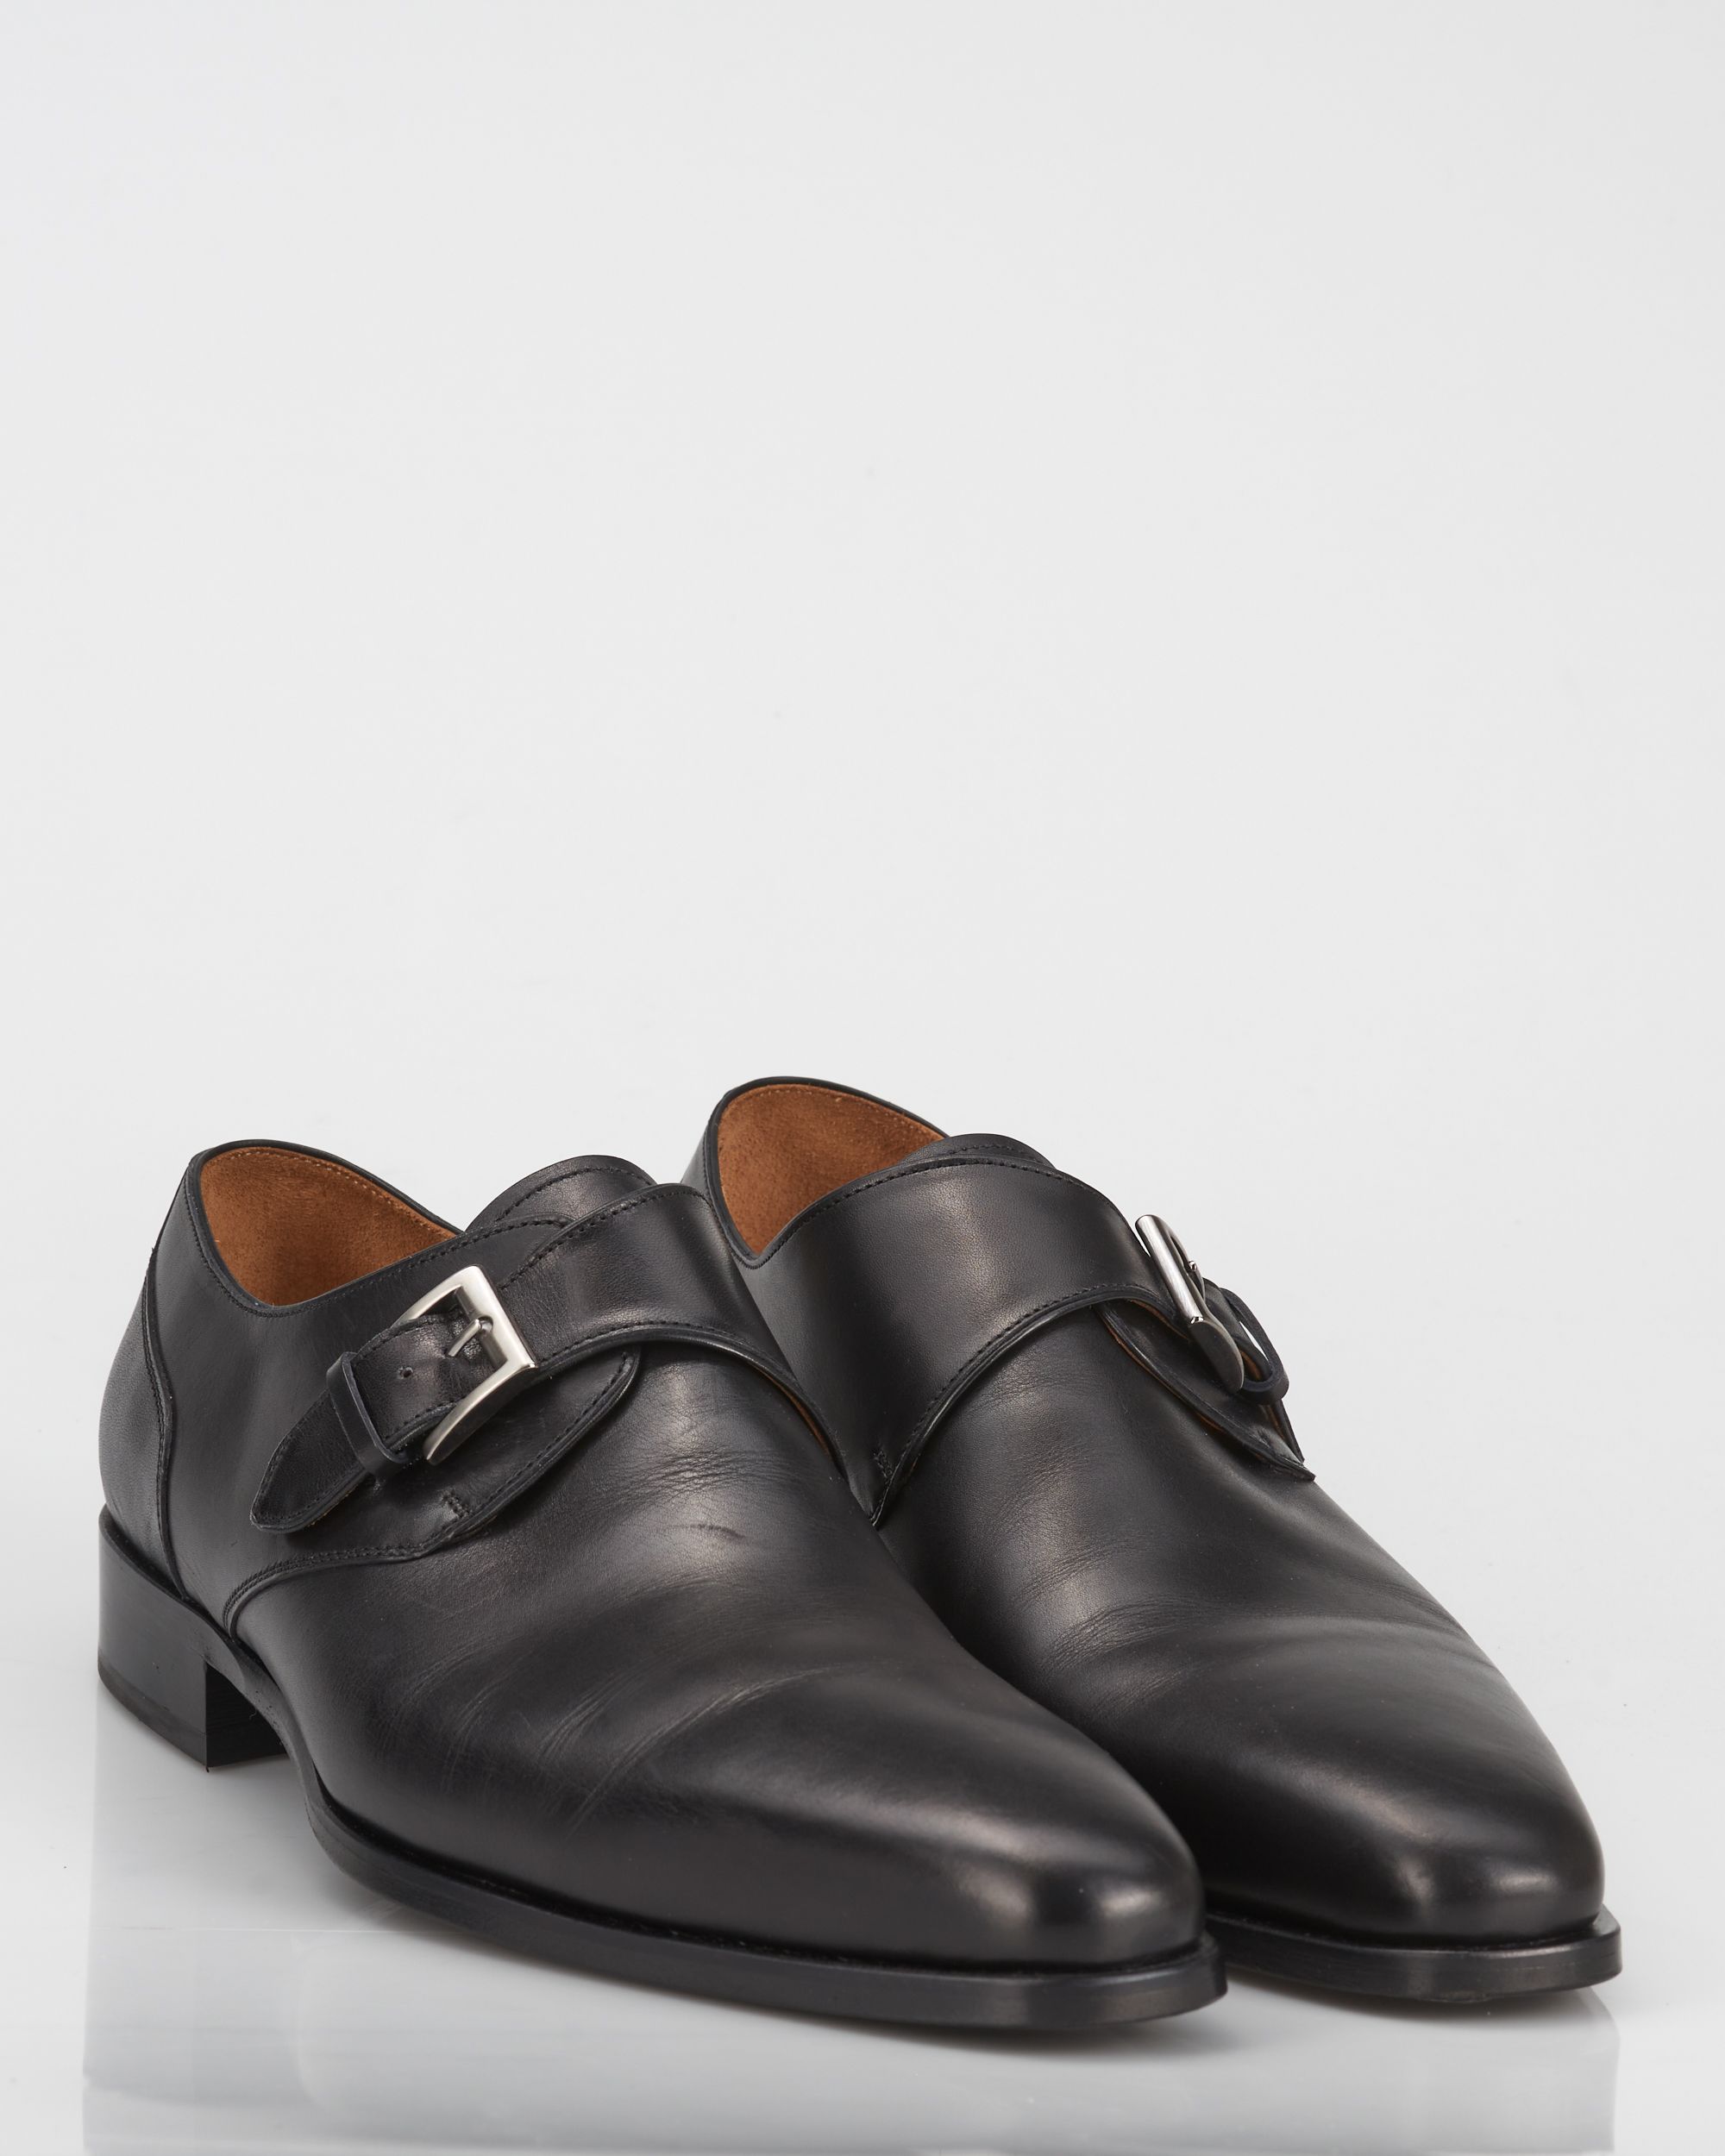 Dutch Dandies x Greve Geklede schoenen Zwart 059076-002-10